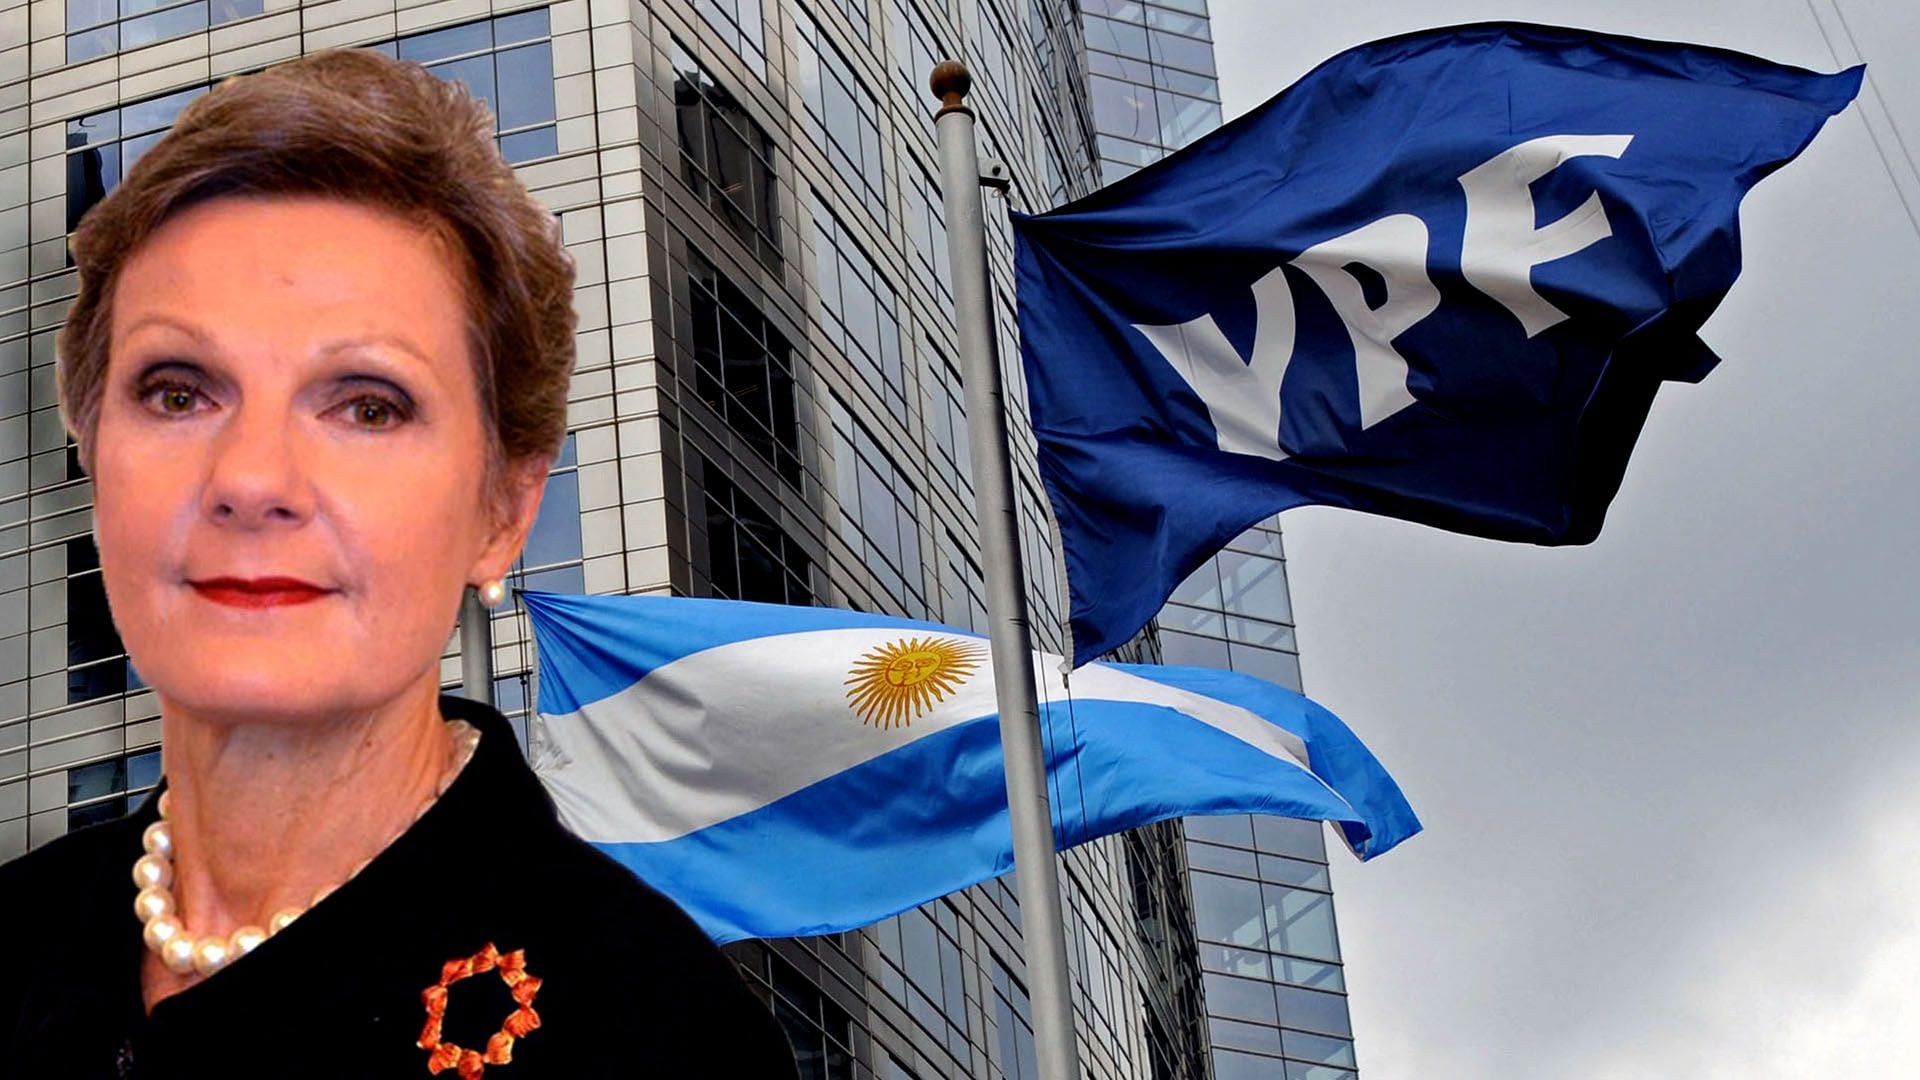 La jueza Loretta Preska debe ahora responder al pedido argentino, antes del 16 de octubre
Foto NA: JUAN VARGASzzzz